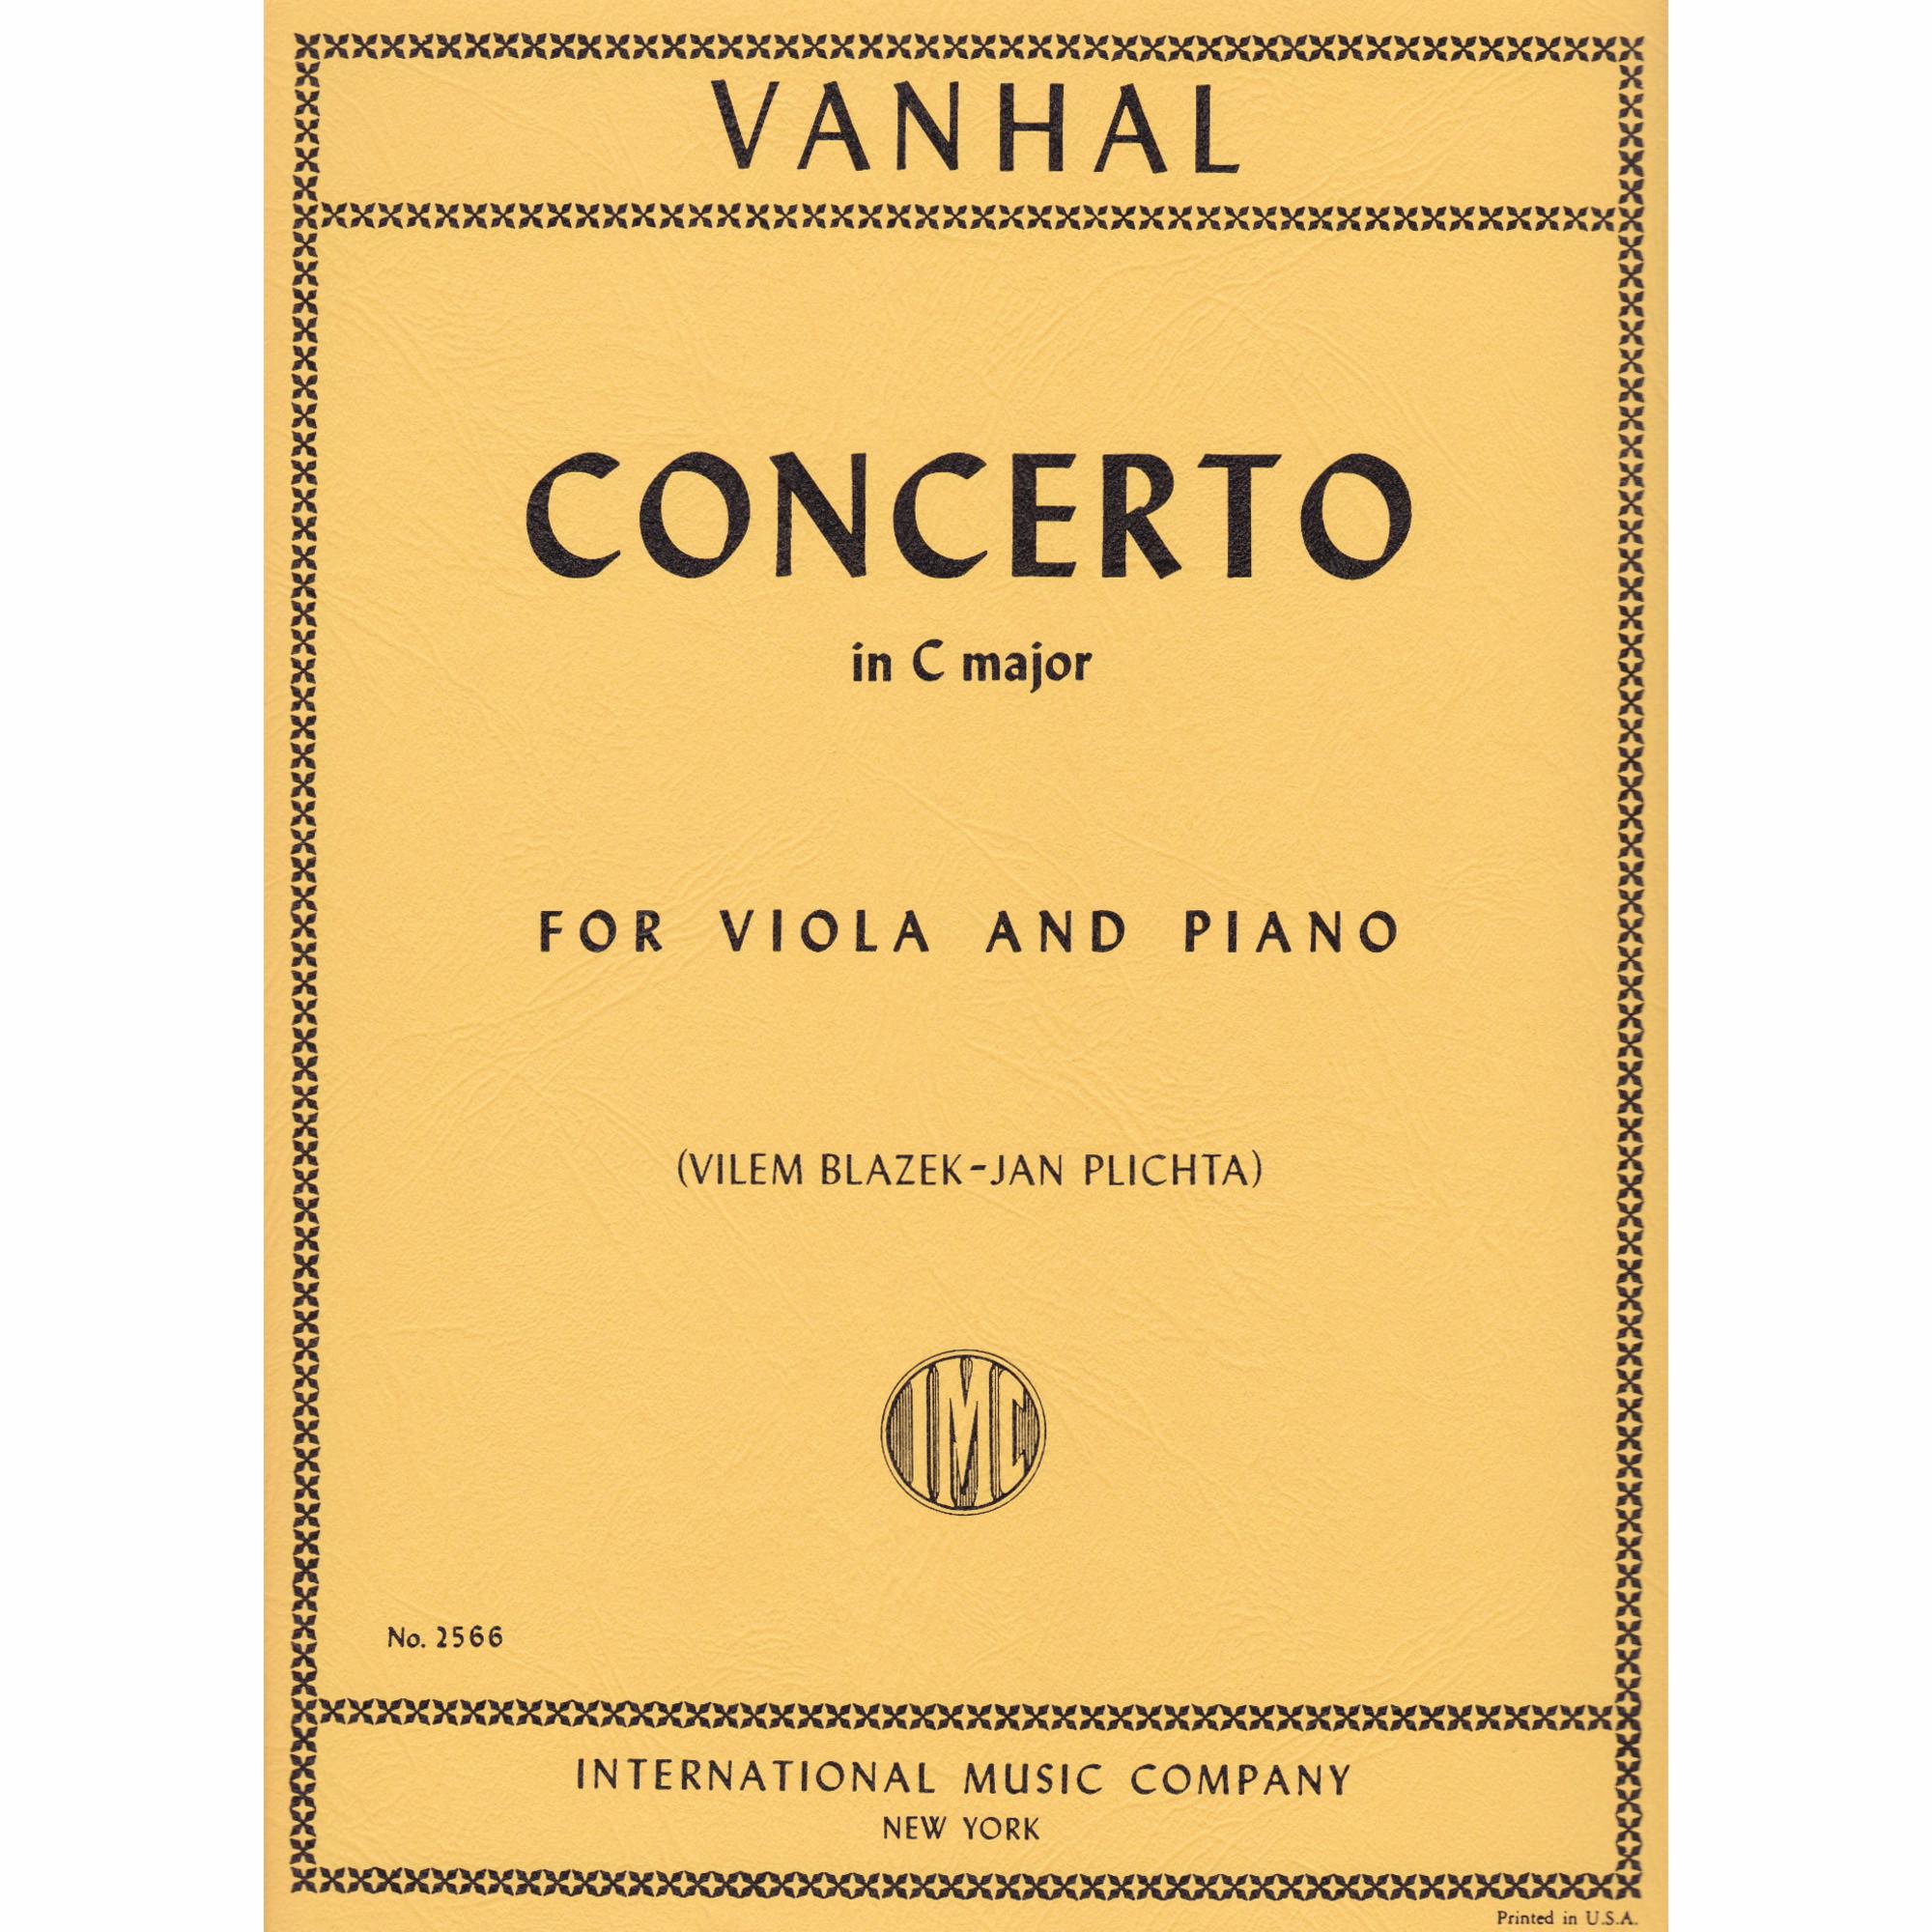 Viola Concerto in C Major